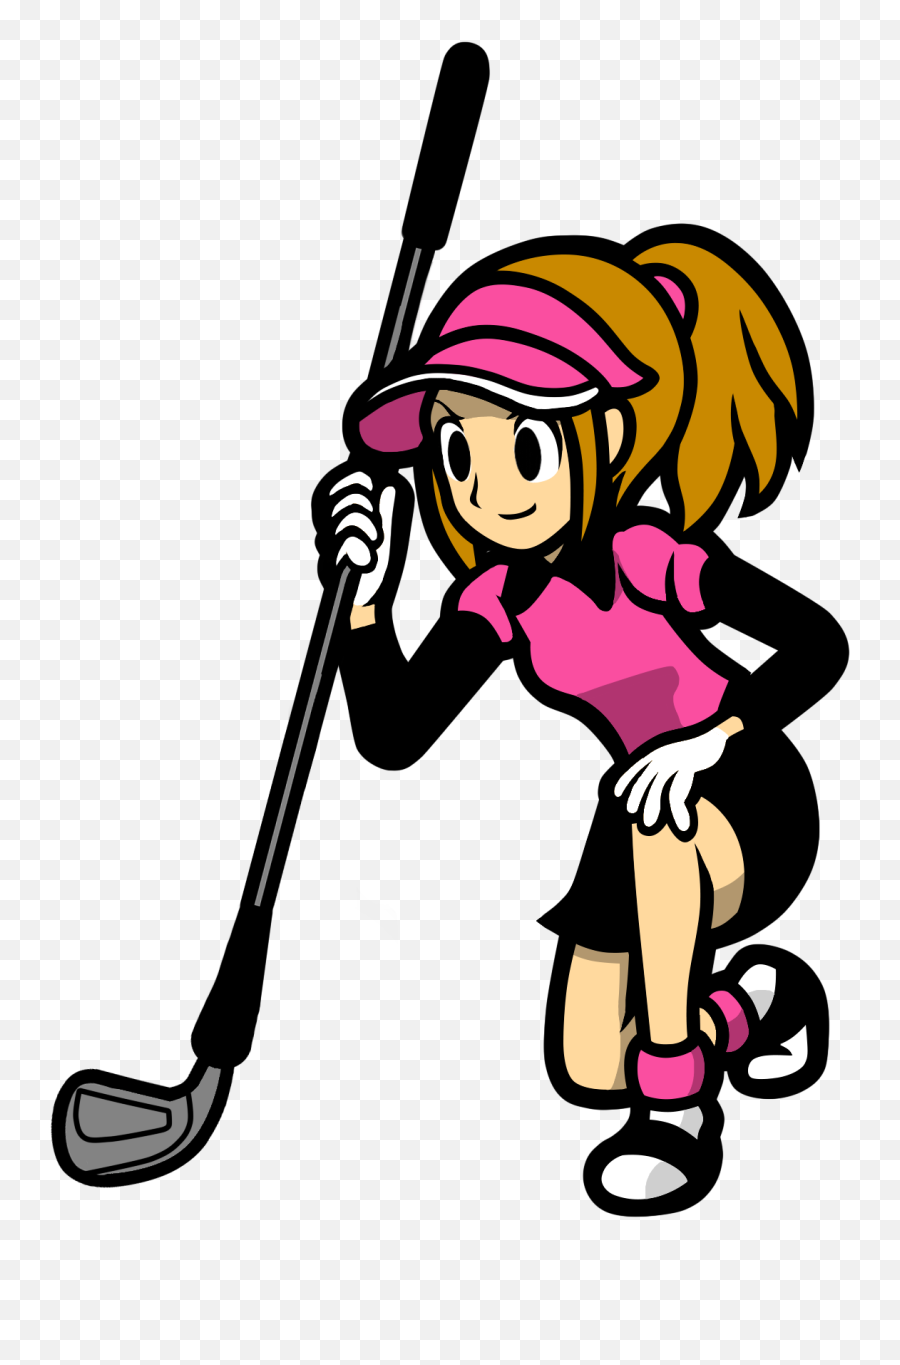 Clap Clipart Rhythm Clap Rhythm - Women Playing Golf Cartoon Emoji,Golf Clap Emoji